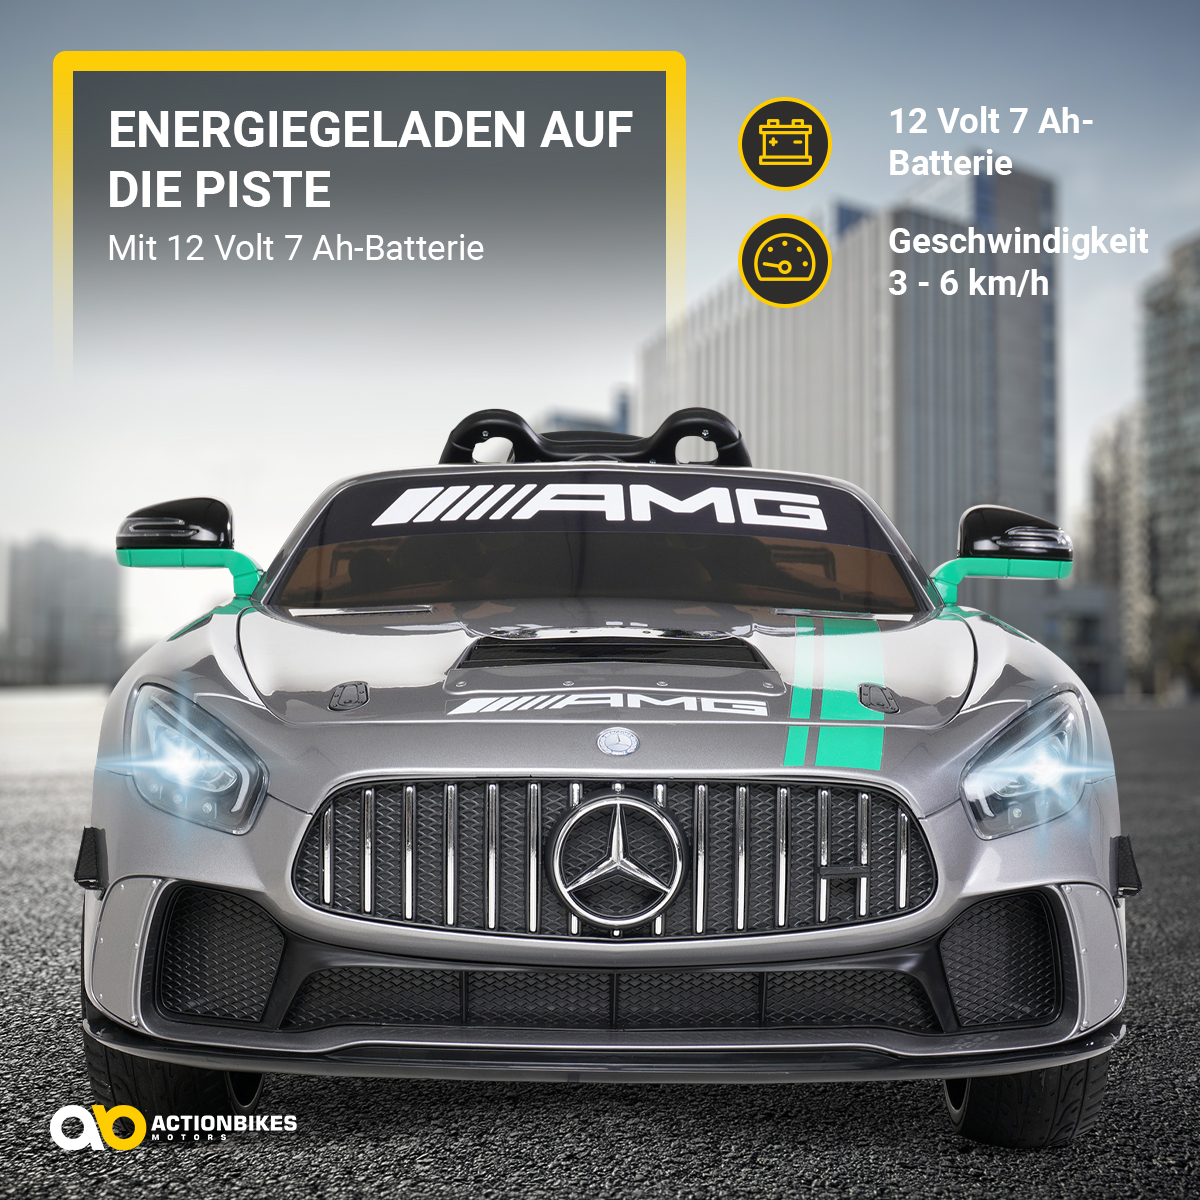 MOTORS GT4 Elektroauto Sport Mercedes Edition AMG ACTIONBIKES